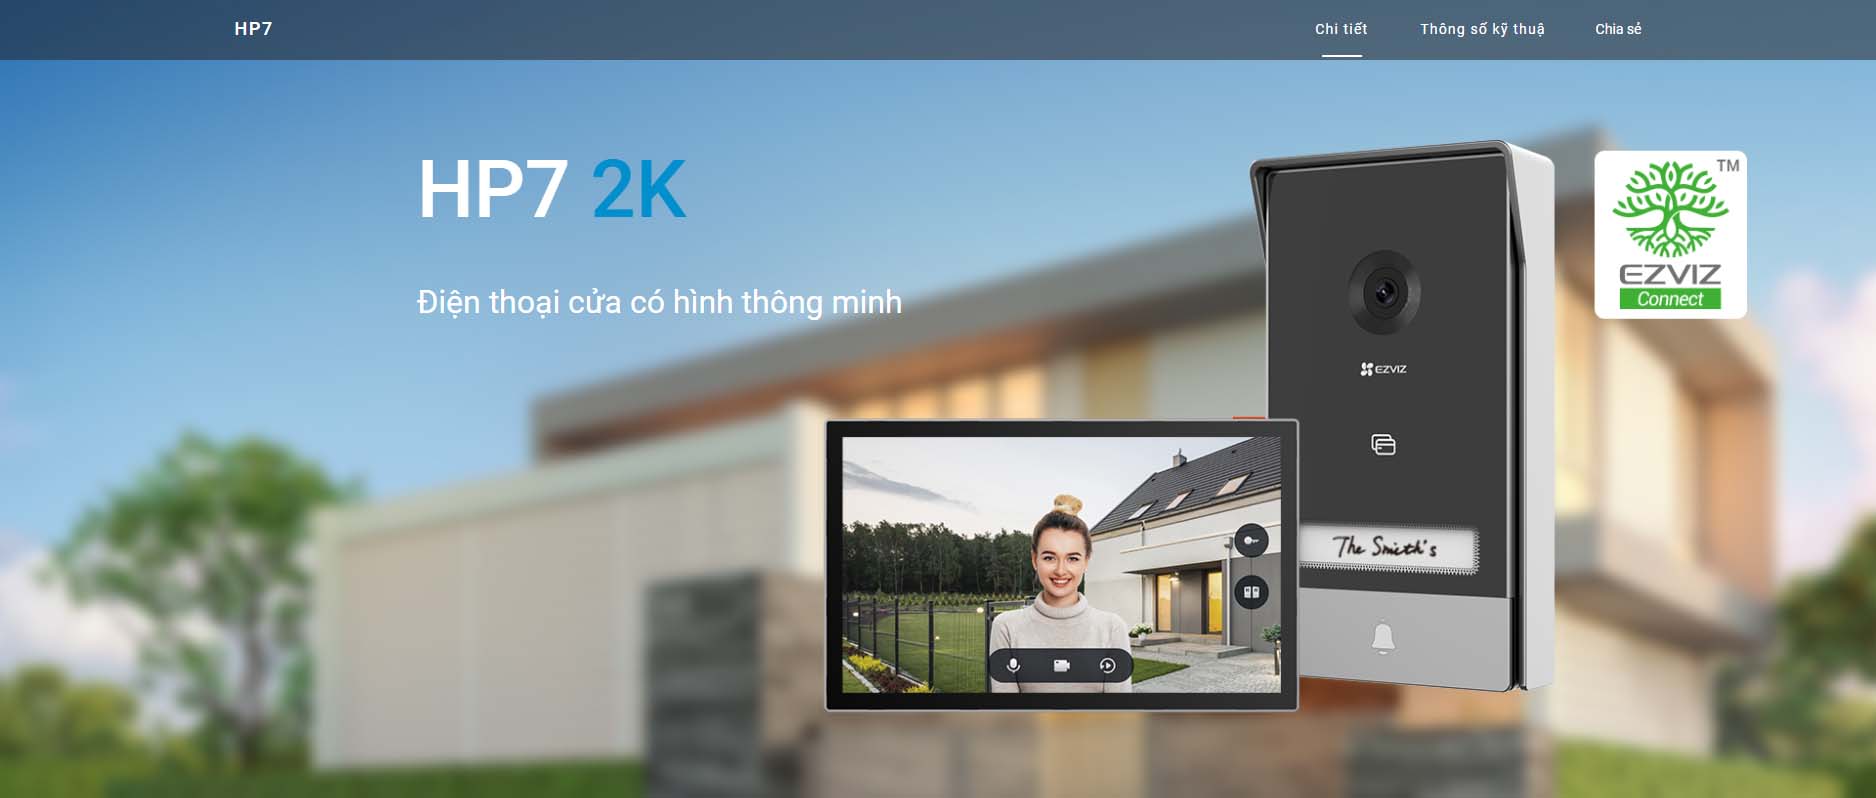 Smart Home HP7 2K EZVIZ tại Hải Phòng